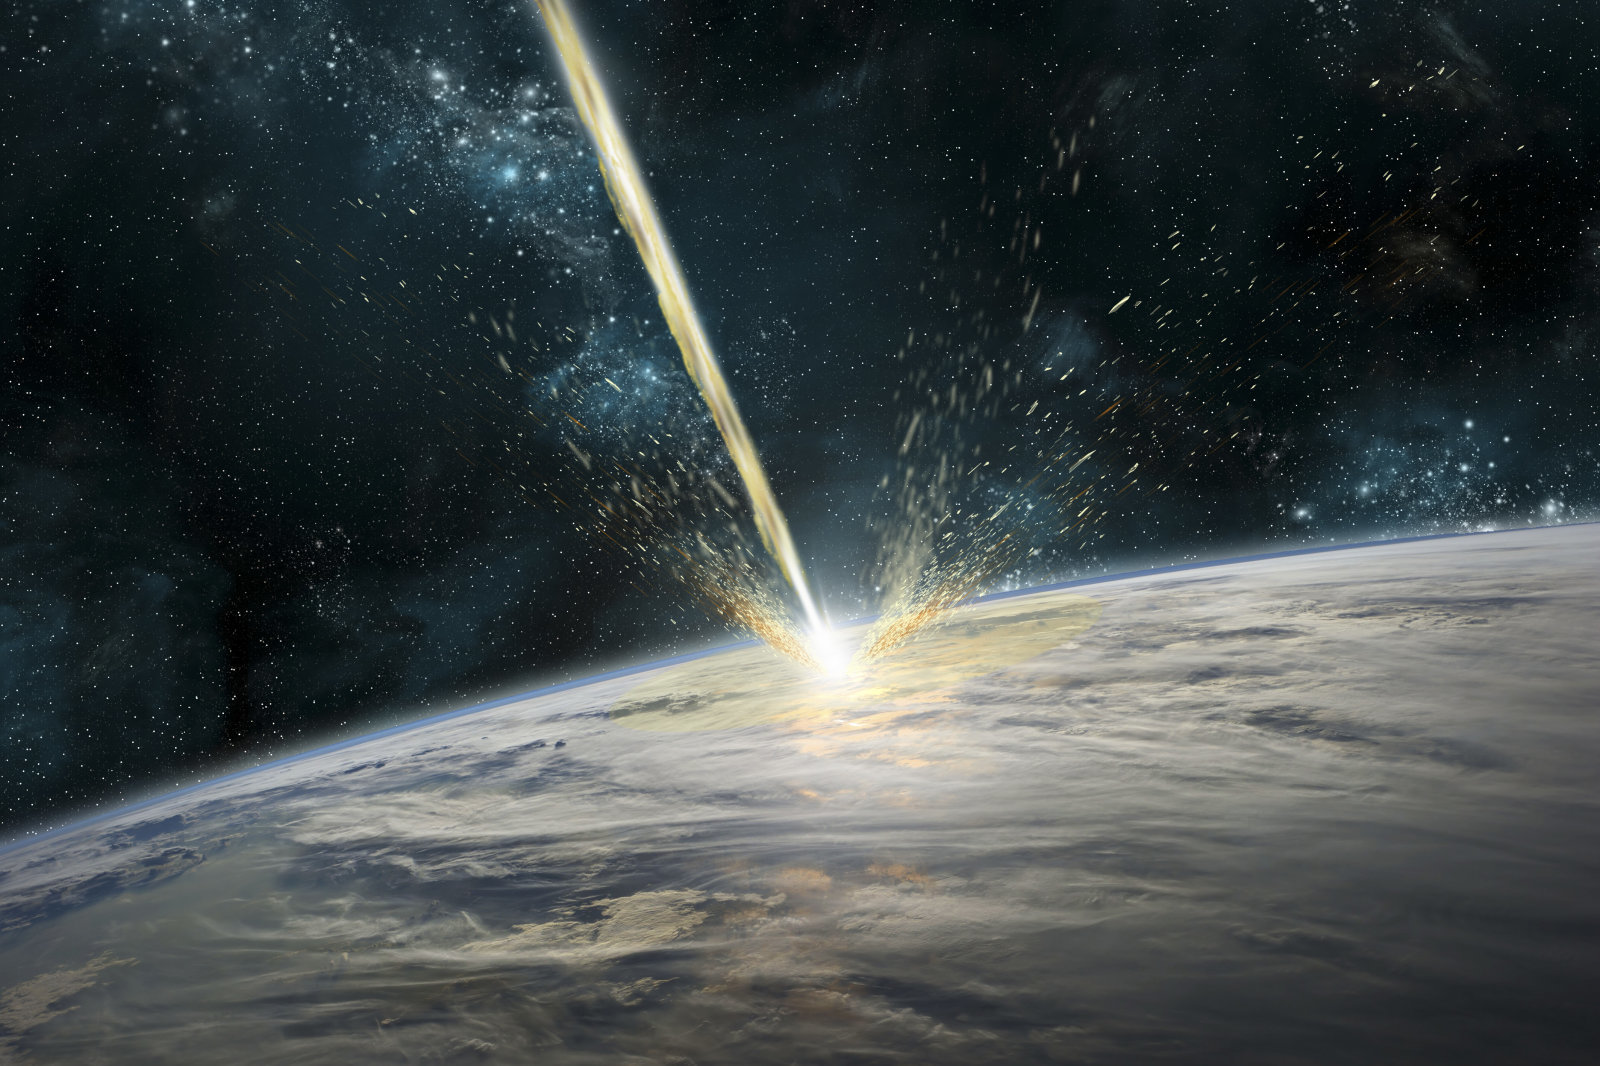 NASA ve ESA, asteroit tehdidine karşı birlikte çalışacak